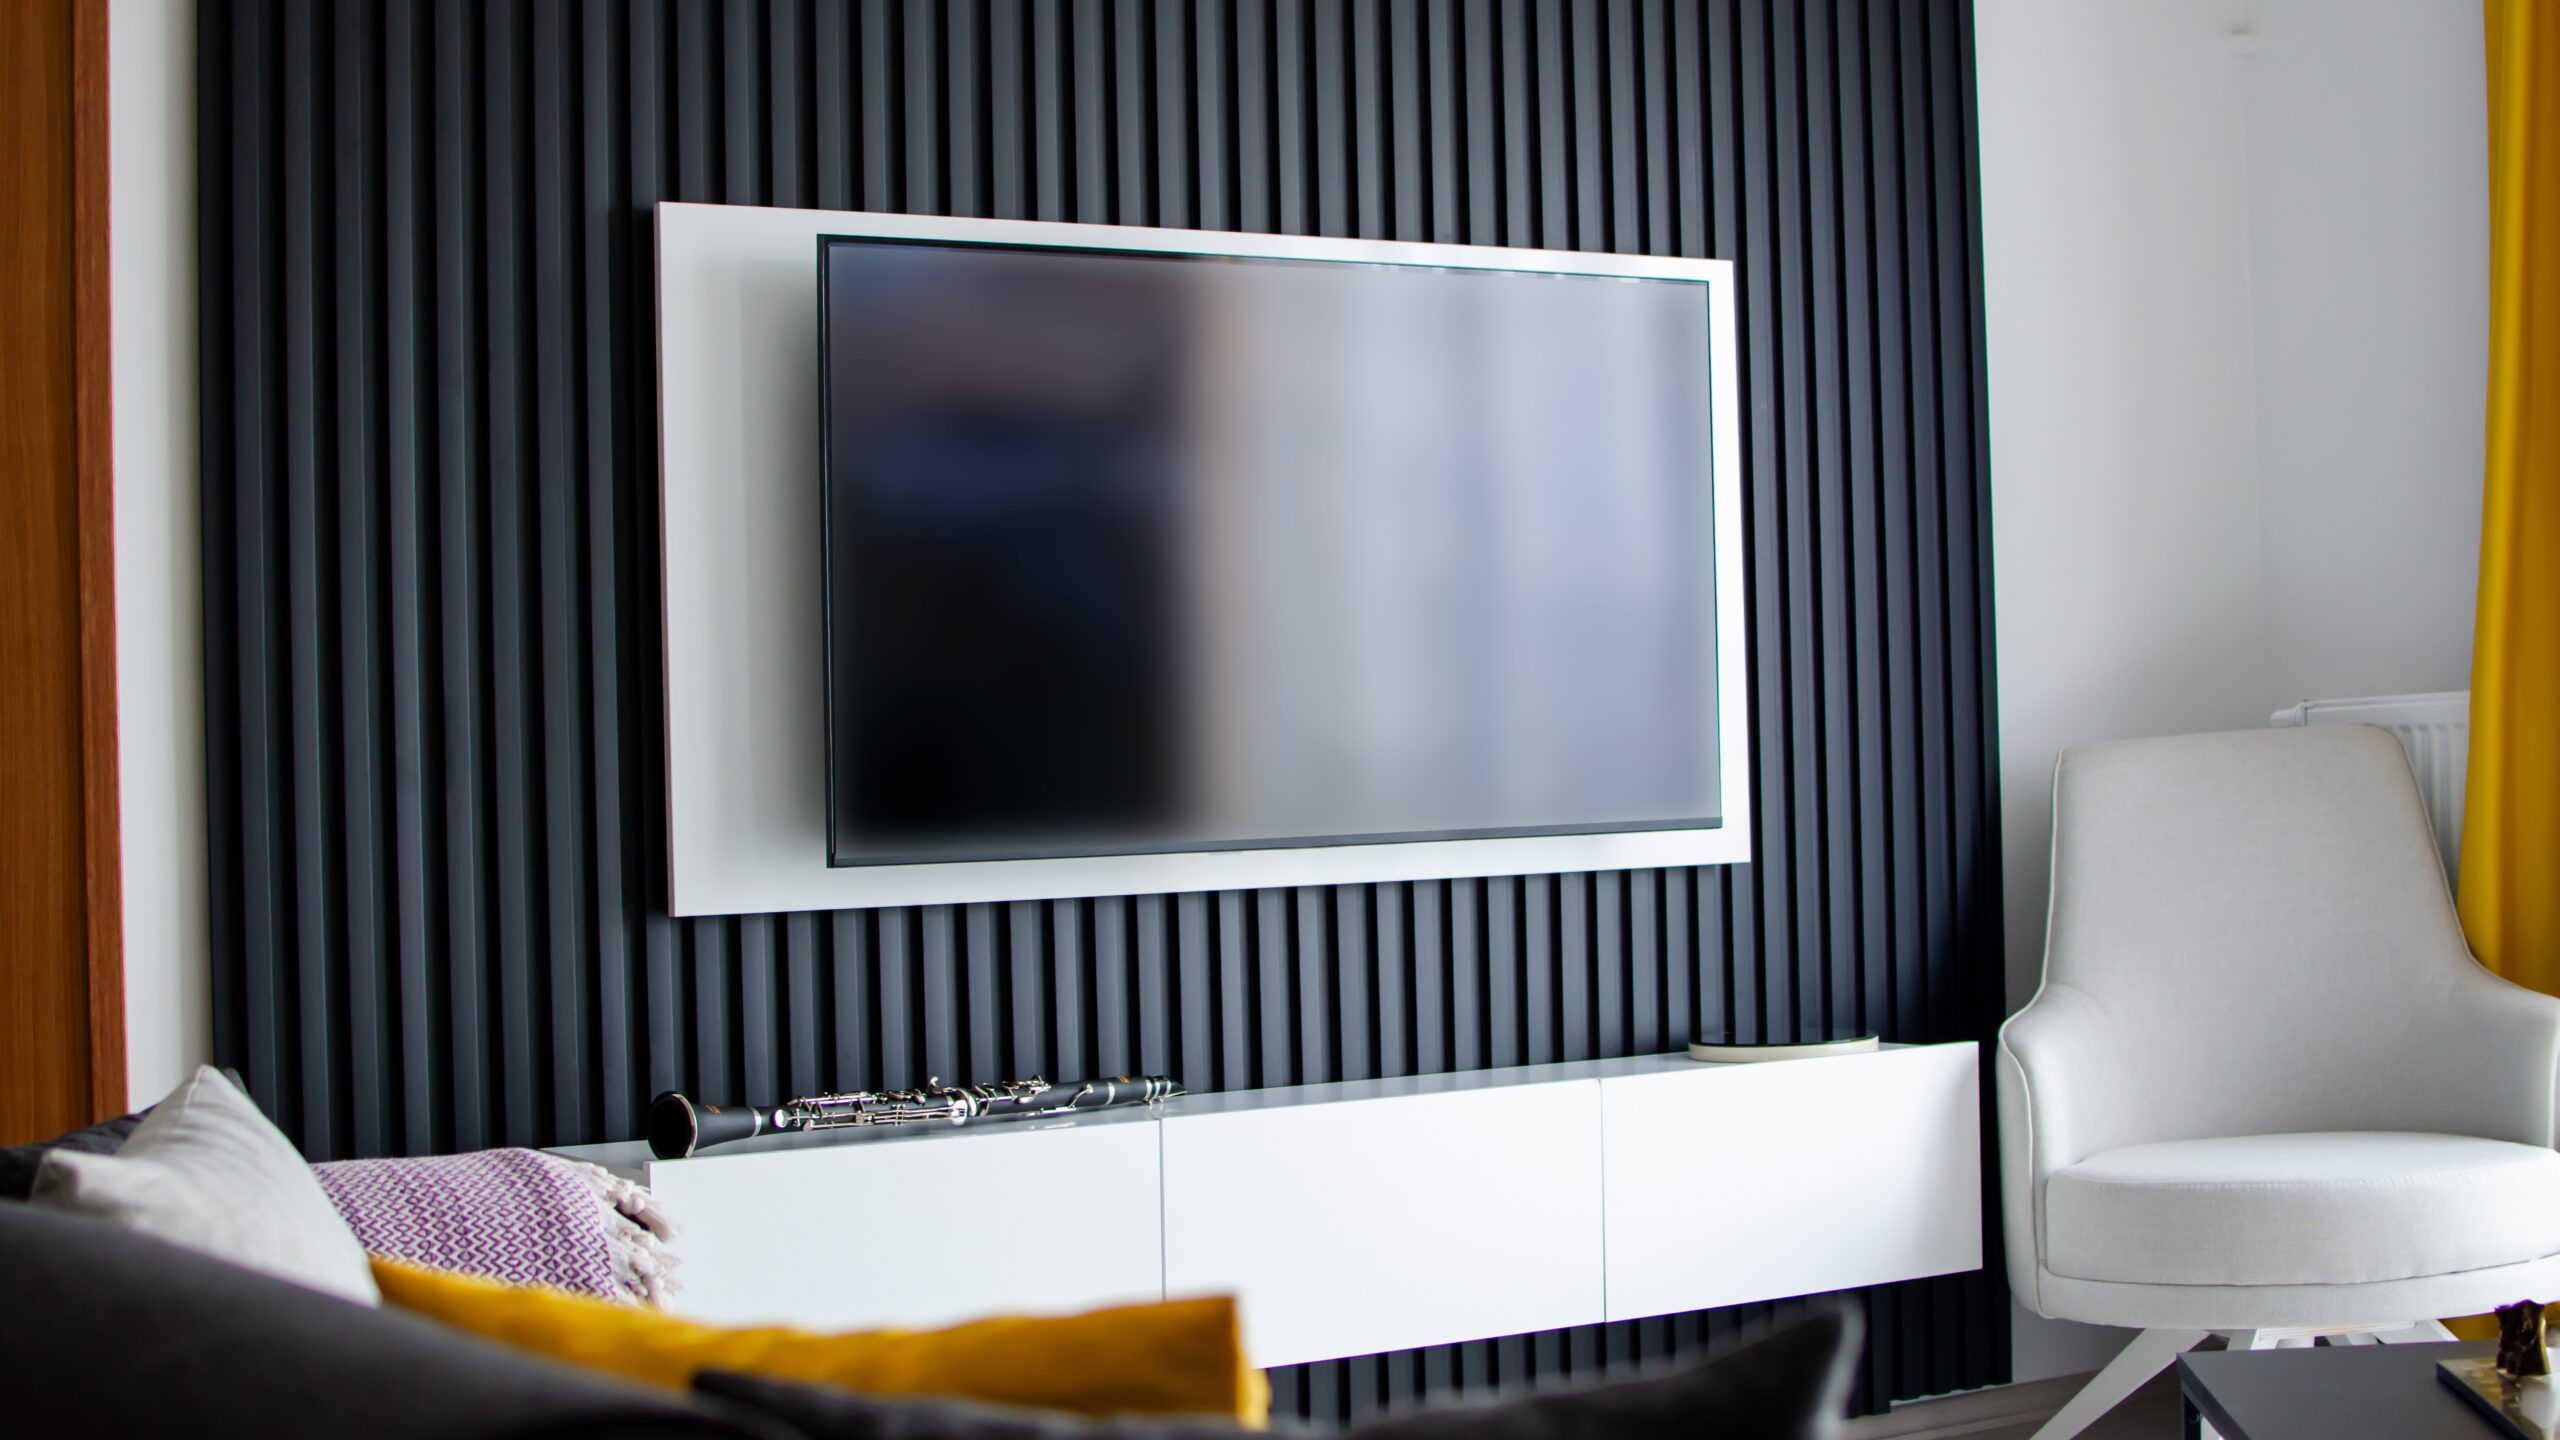 Współczesny salon z telewizorem na ścianie z czarnymi pionowymi panelami, białą szafką pod telewizorem, białym fotelem i żółtą zasłoną.